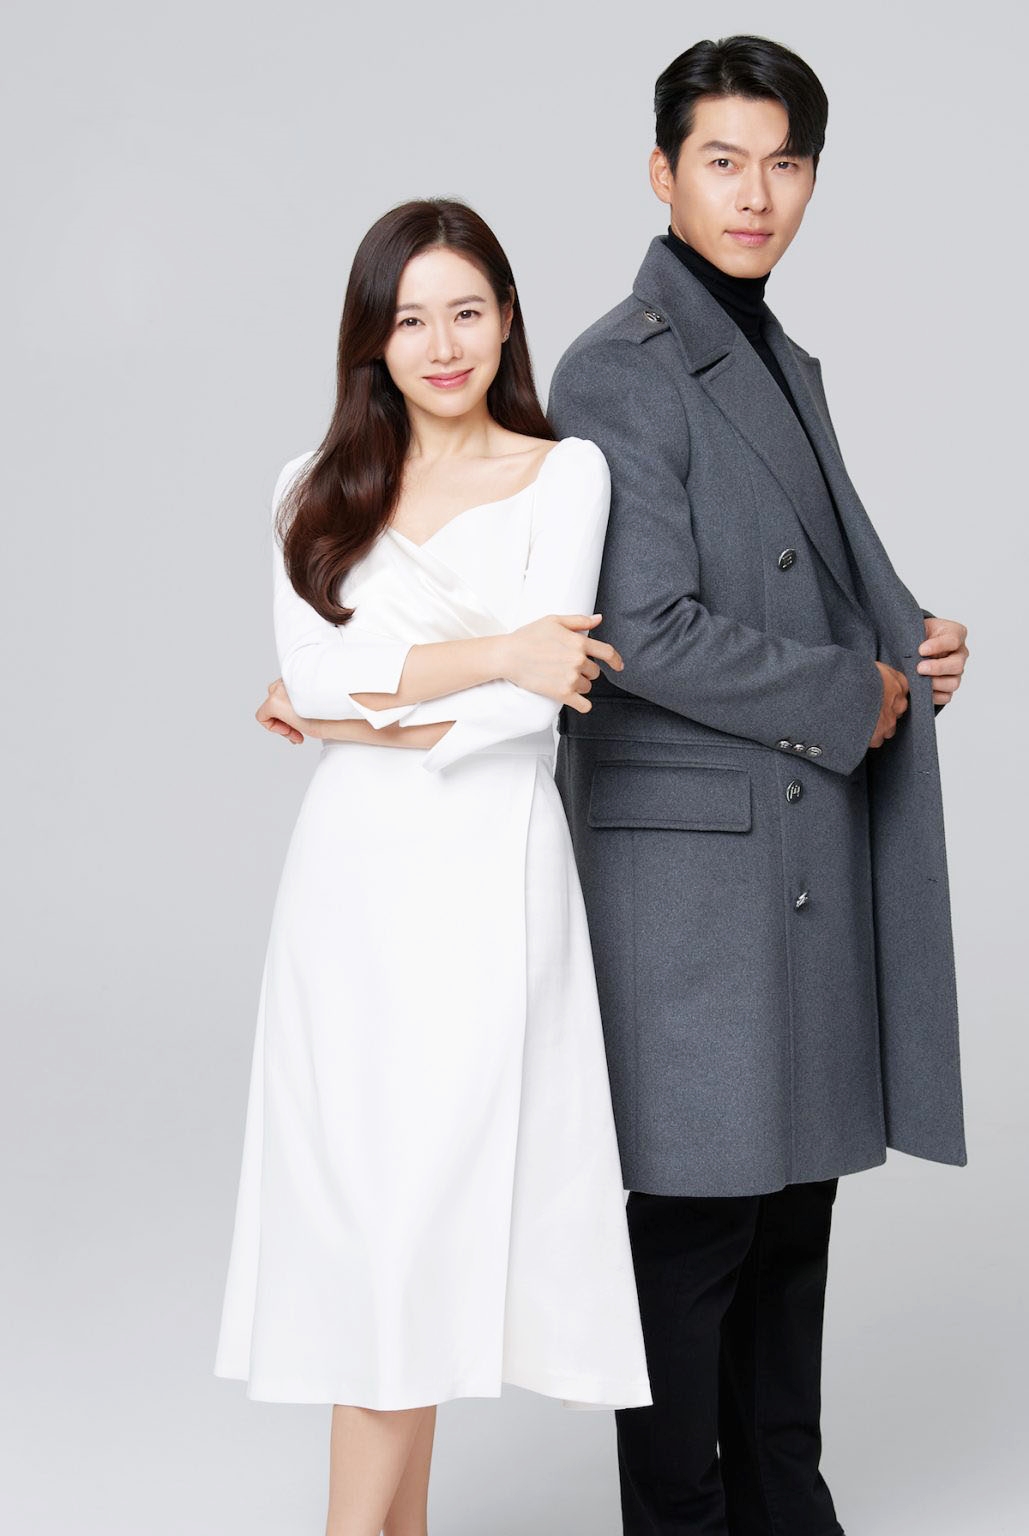 Hóa ra Hyun Bin và Son Ye Jin đã tập dượt trao nhẫn cưới từ... tận 3 năm trước! - Ảnh 1.